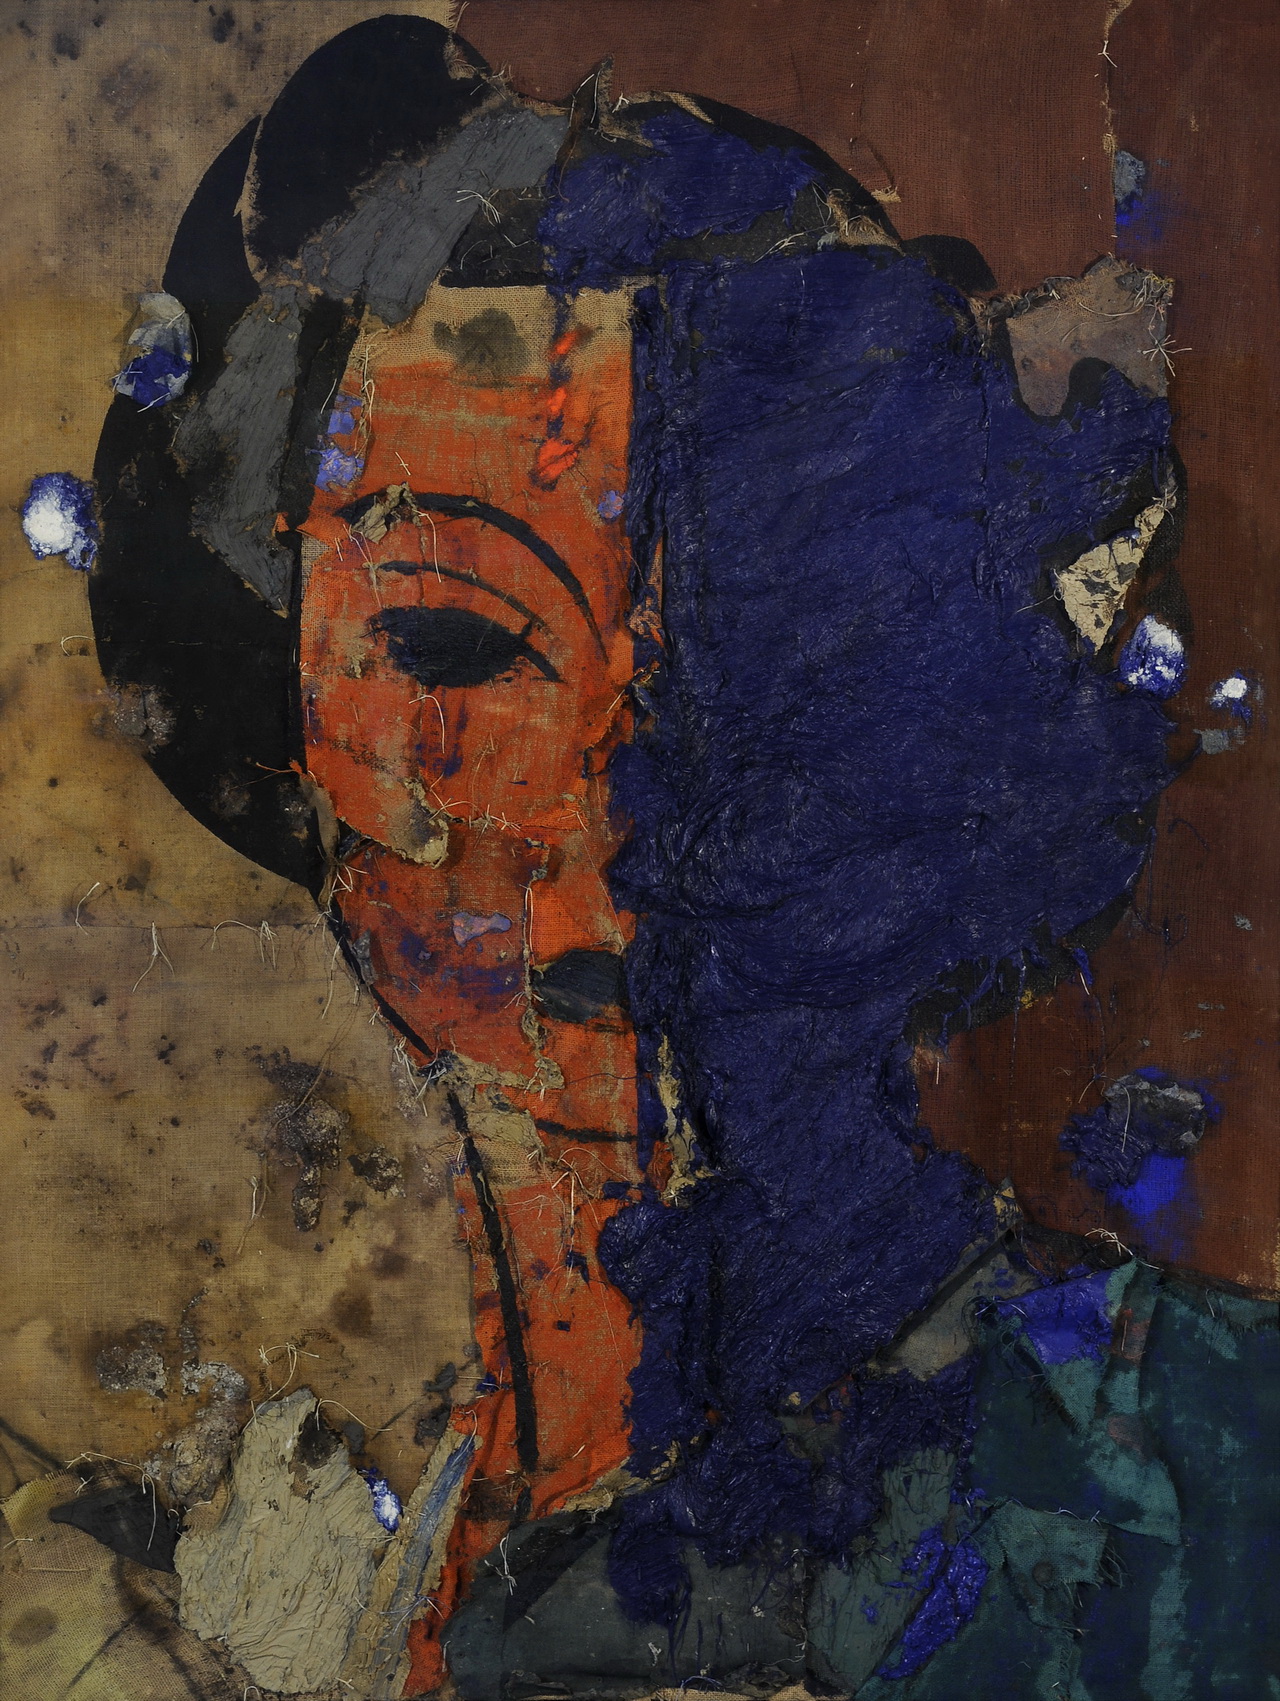 Manolo Valdés Retrato con rostro naranja y azul, 1999